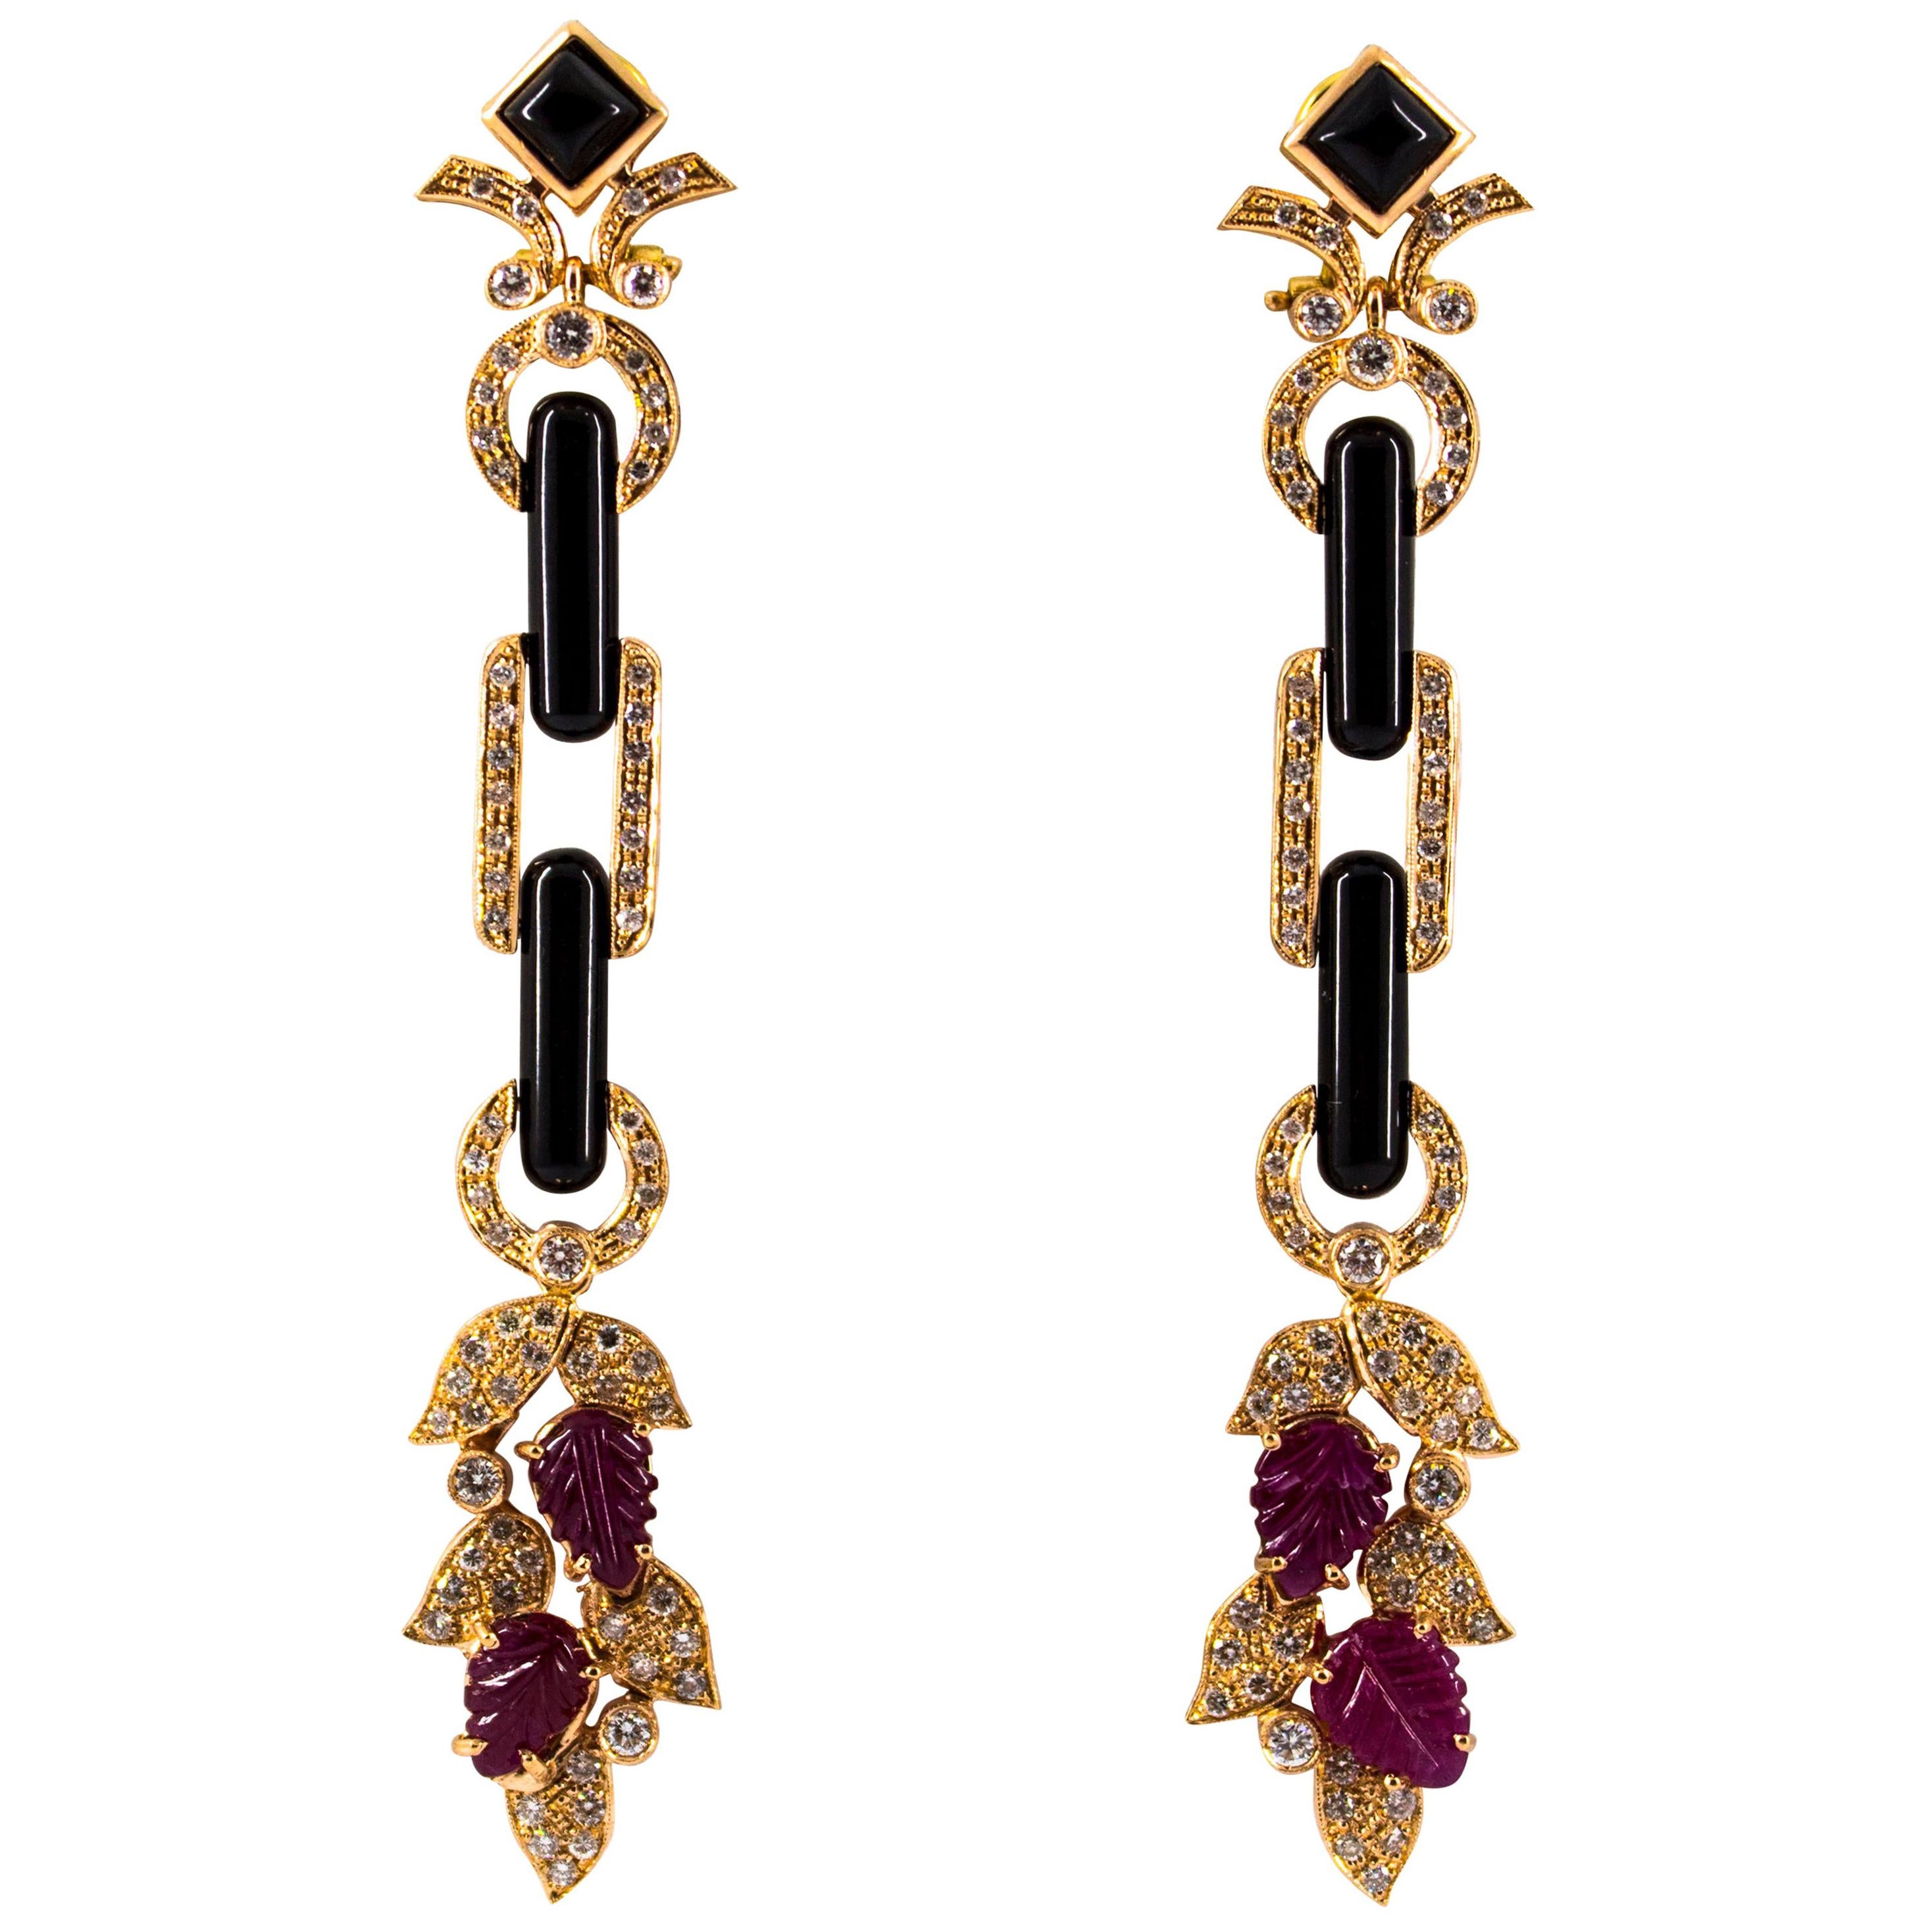 Boucles d'oreilles en goutte de style Art nouveau en or jaune avec diamants blancs de 6,56 carats, rubis et onyx